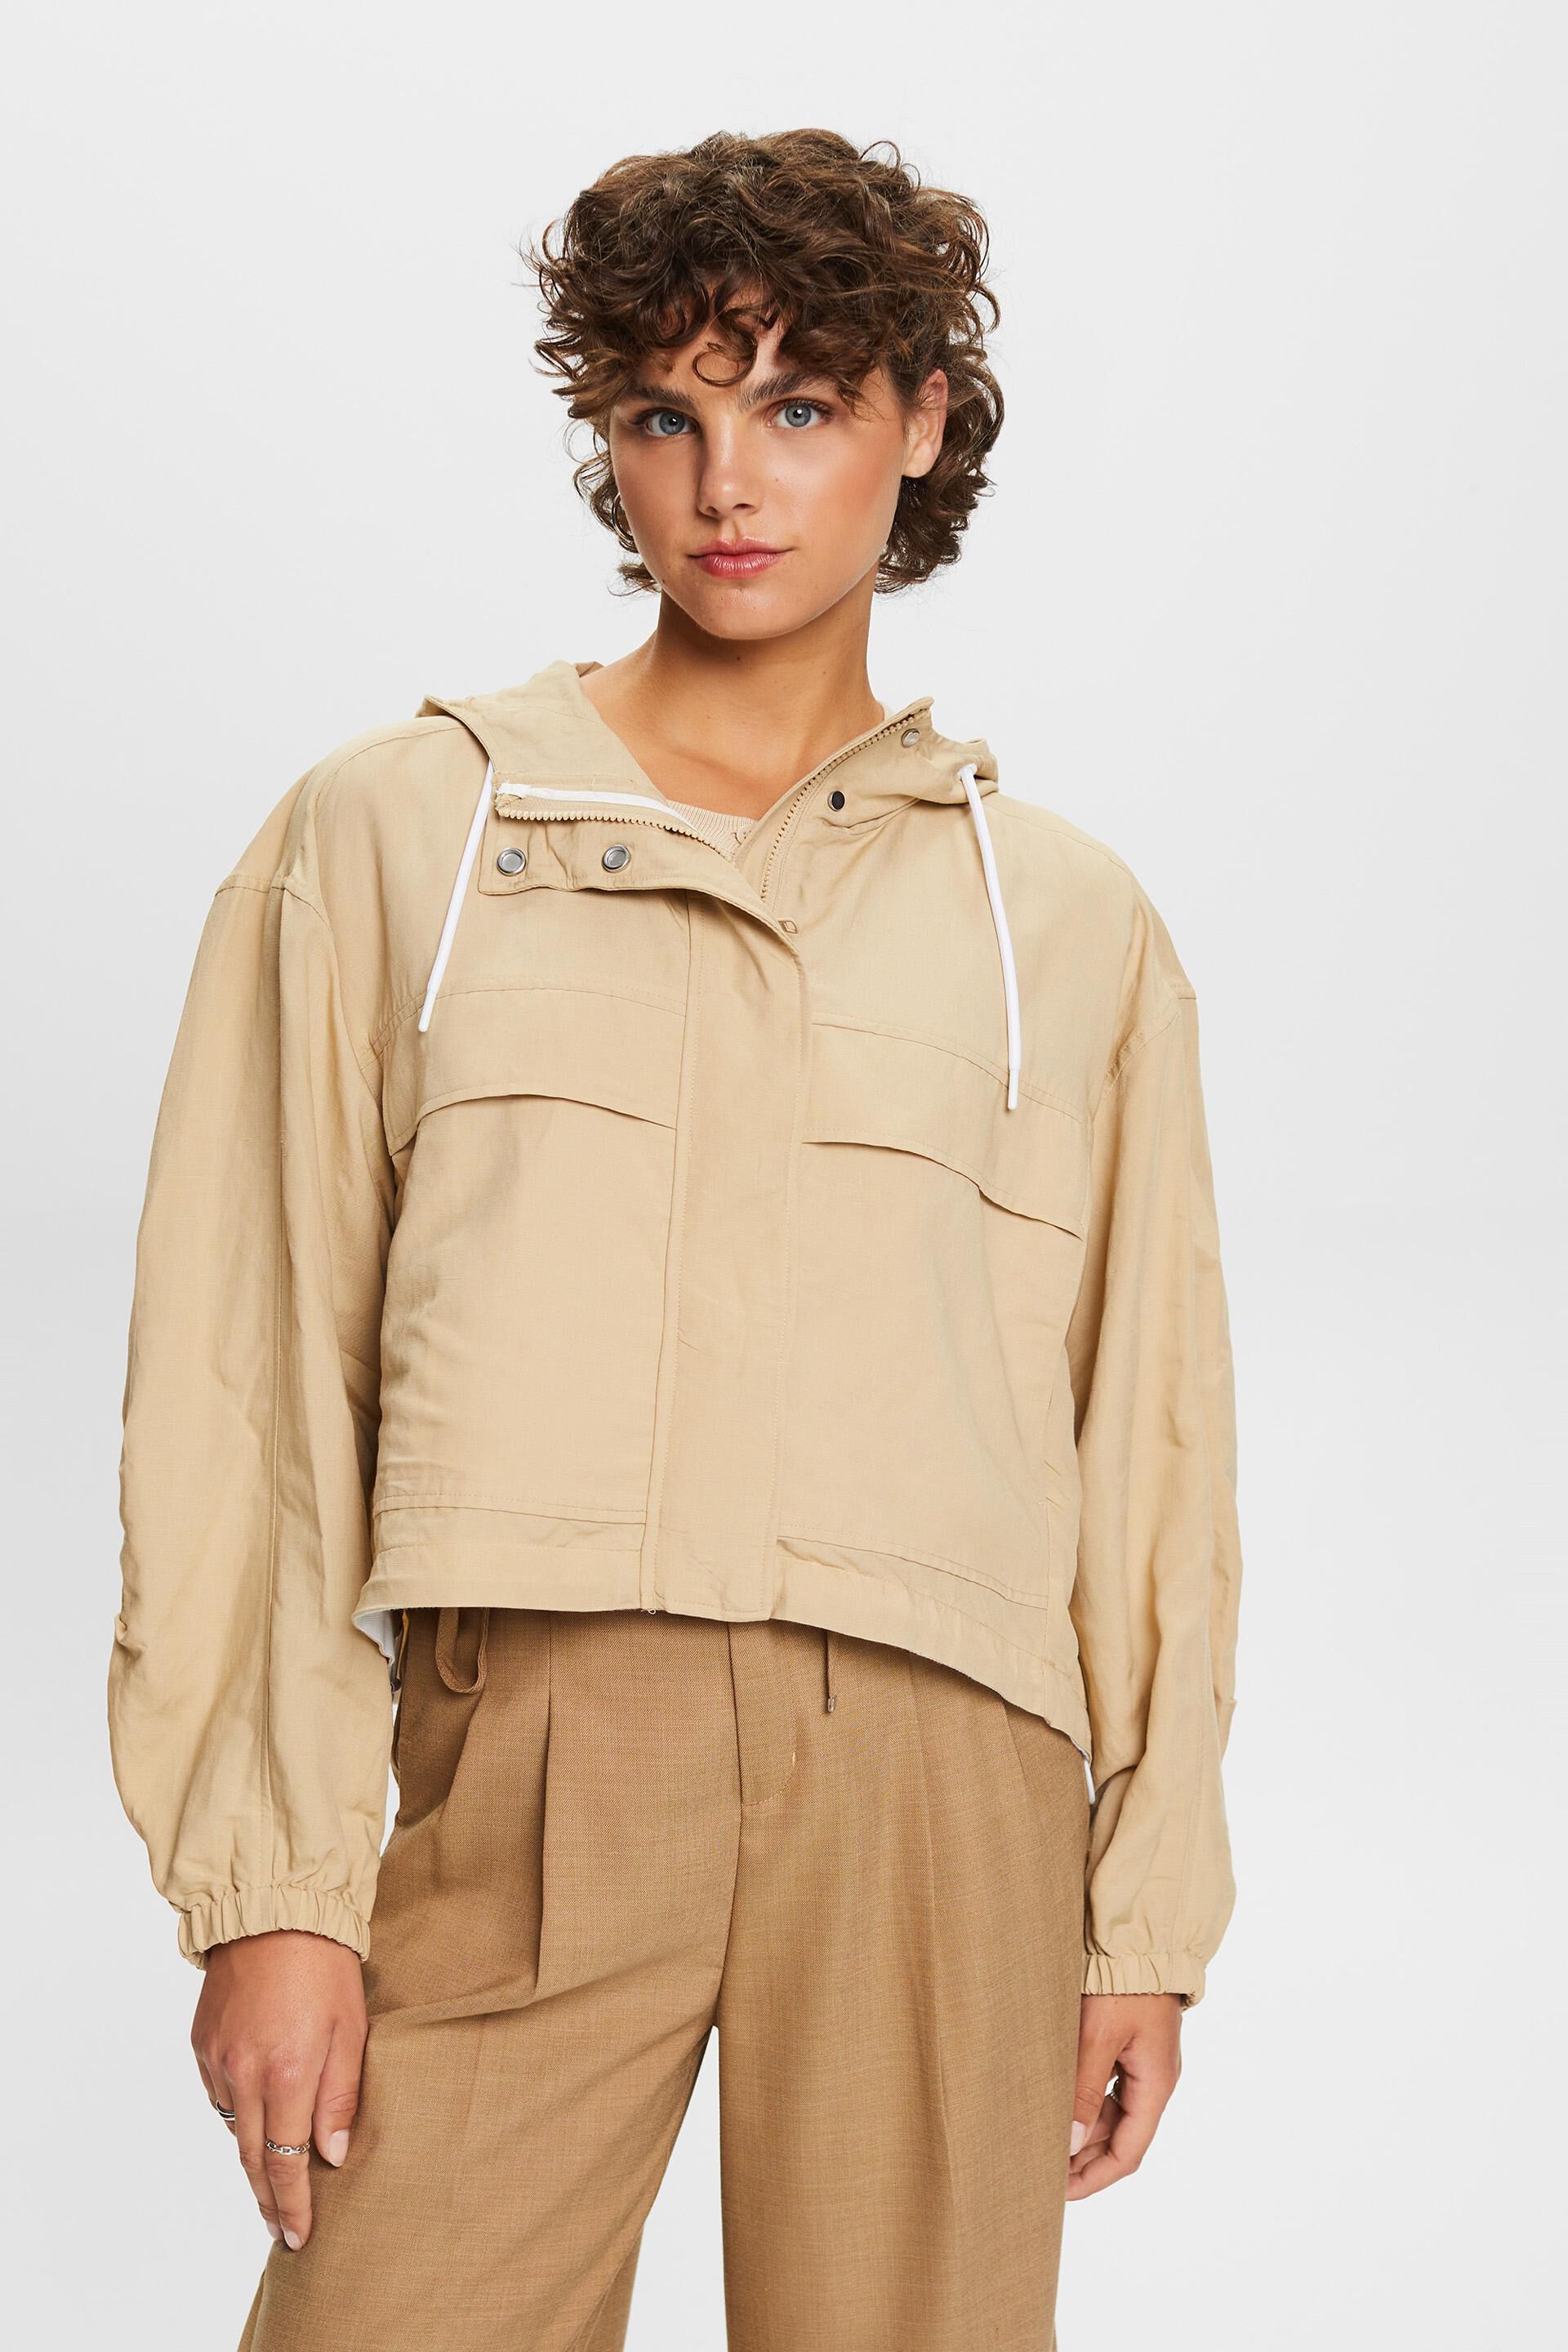 Esprit a with Transitional hood, blend linen jacket